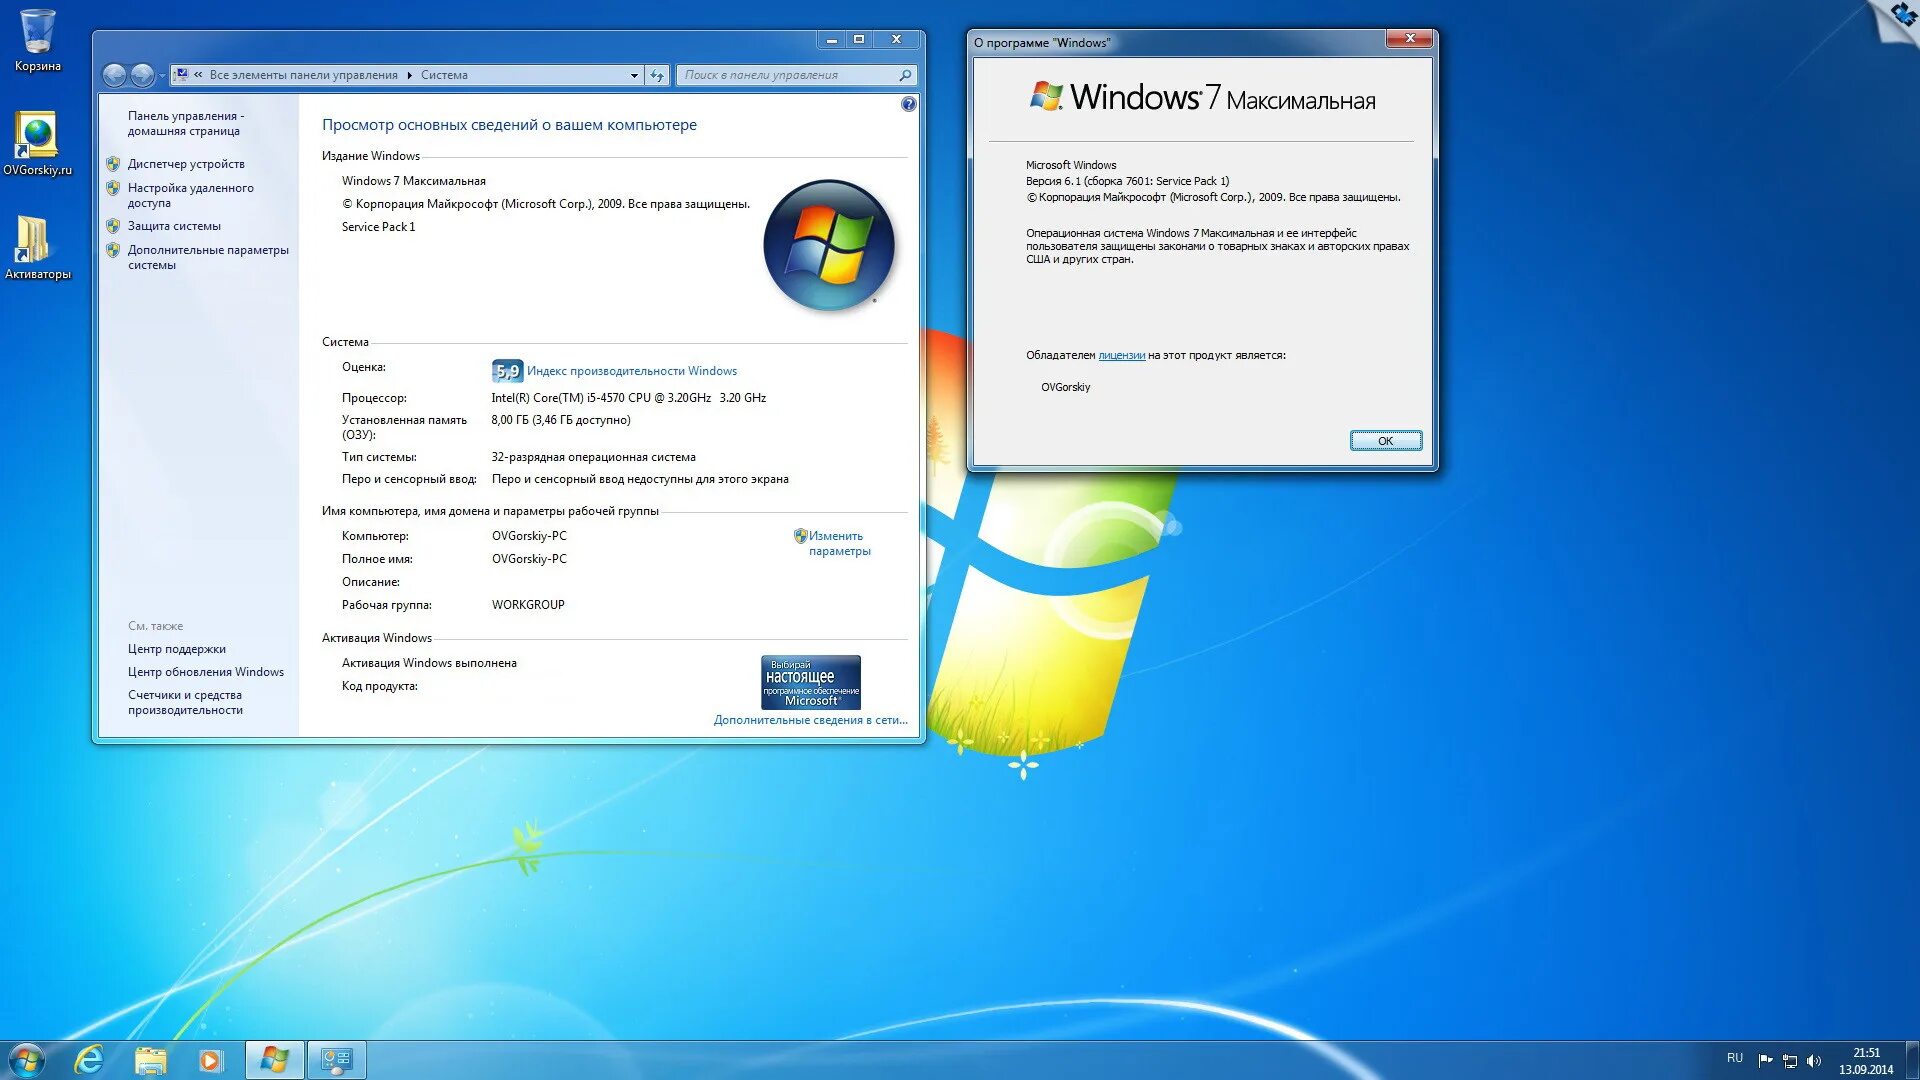 Установочный ОС Windows 7. Характеристики ОС Windows 7. Windows 7 максимальная. Windows 7 максимальная компьютер. Модель windows 7